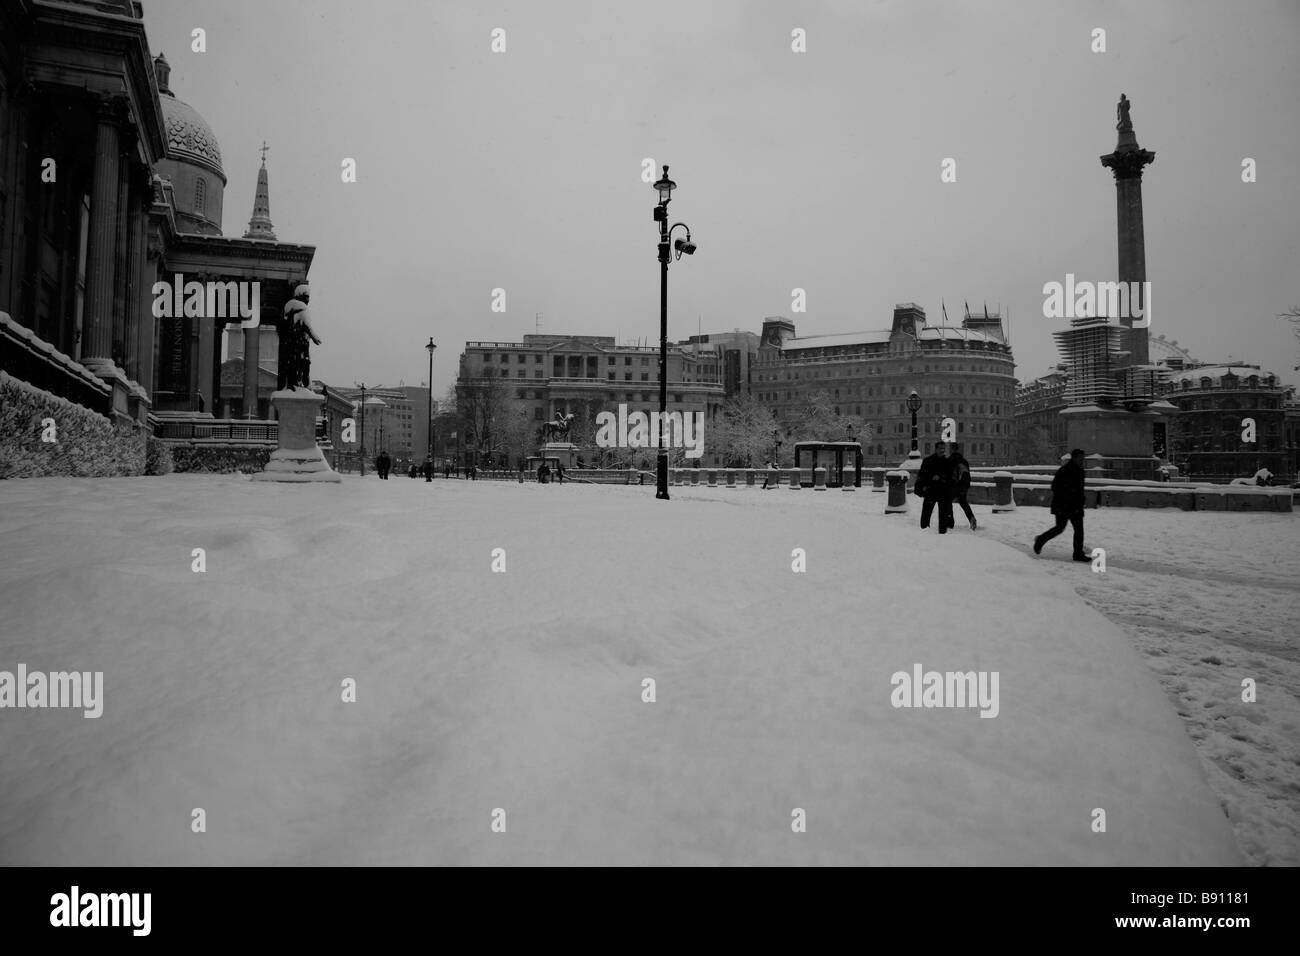 La neige sur la terrasse Nord, Trafalgar Square, Londres Banque D'Images